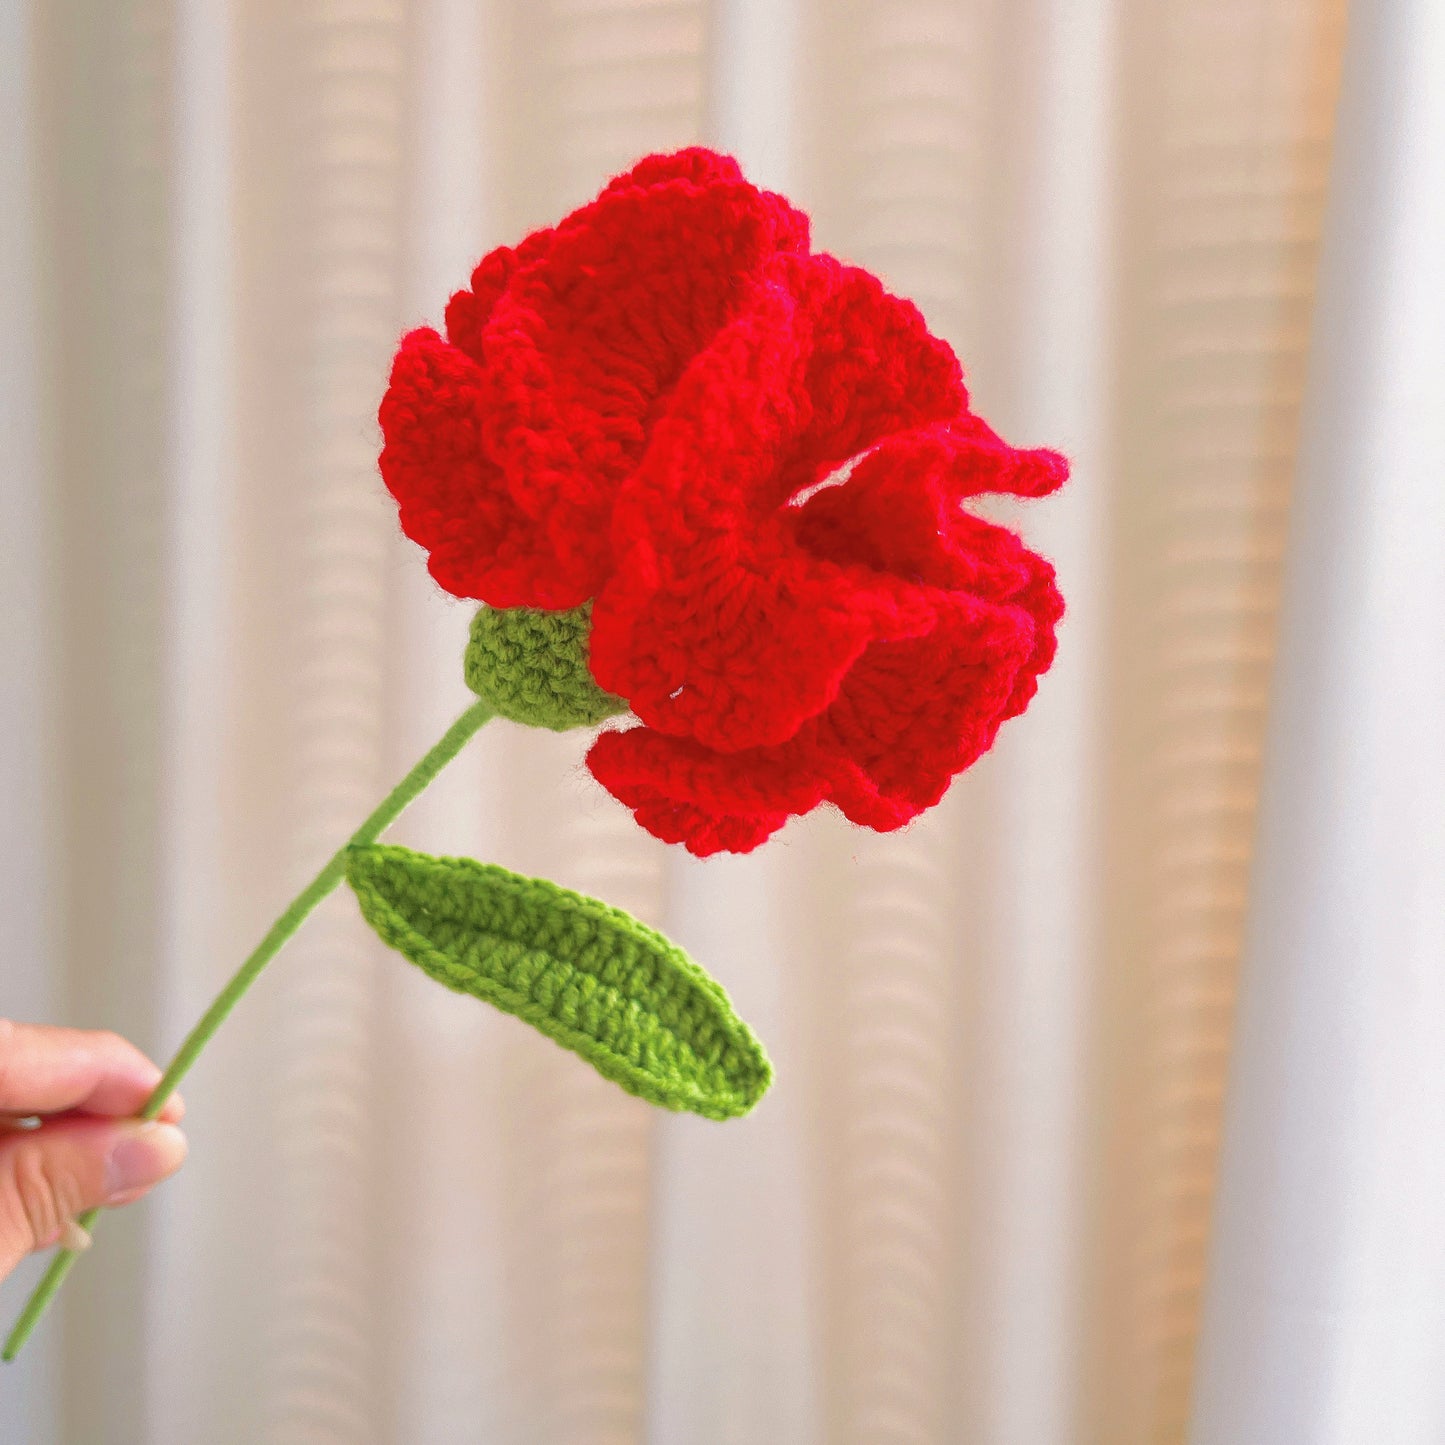 Bouquet d’arrangement floral rouge et orange au crochet fabriqué à la main avec des feuilles d’eucalyptus, parfait pour les cadeaux, les mariages et les occasions spéciales